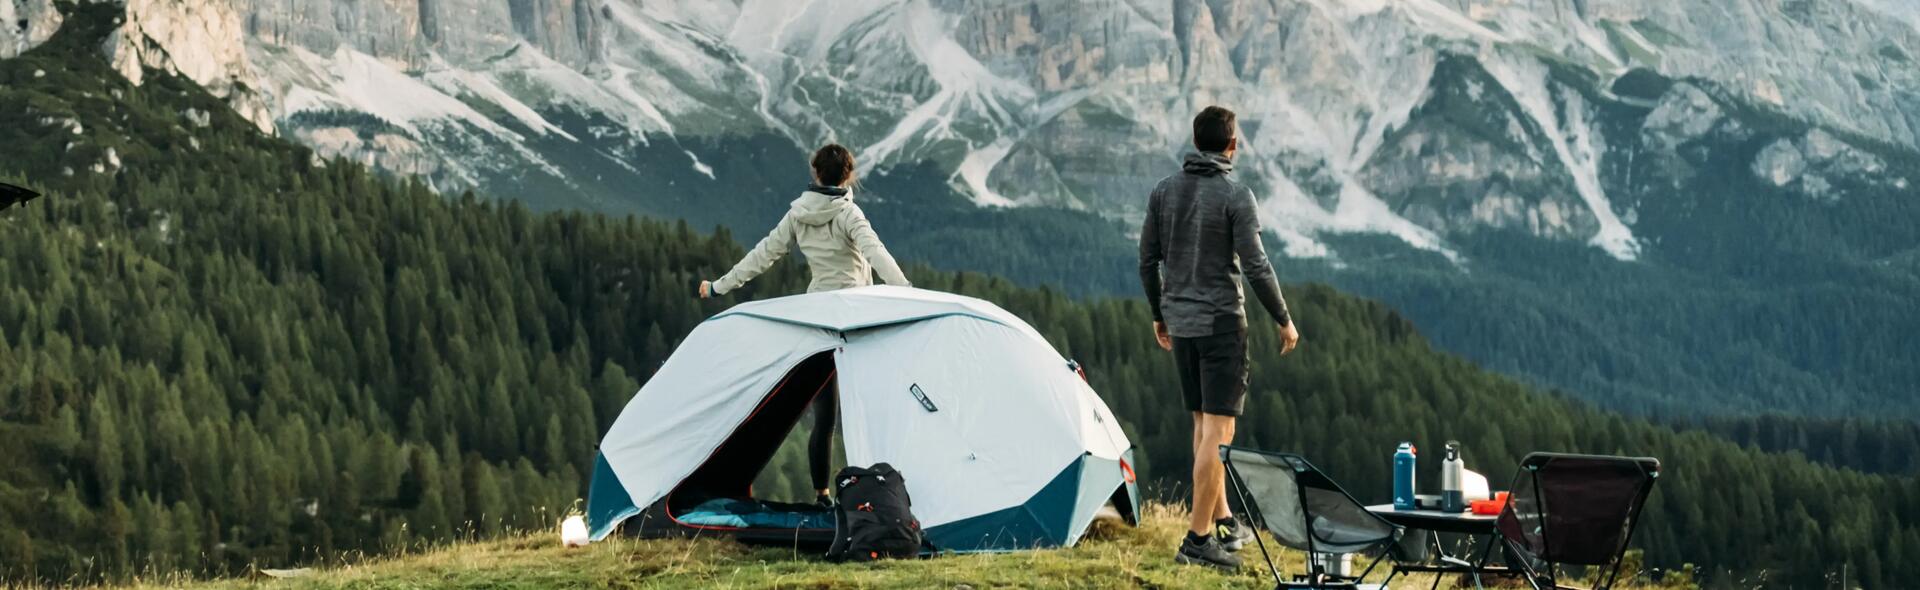 kobieta i mężczyzna stojący przed namiotem turystycznym w górach